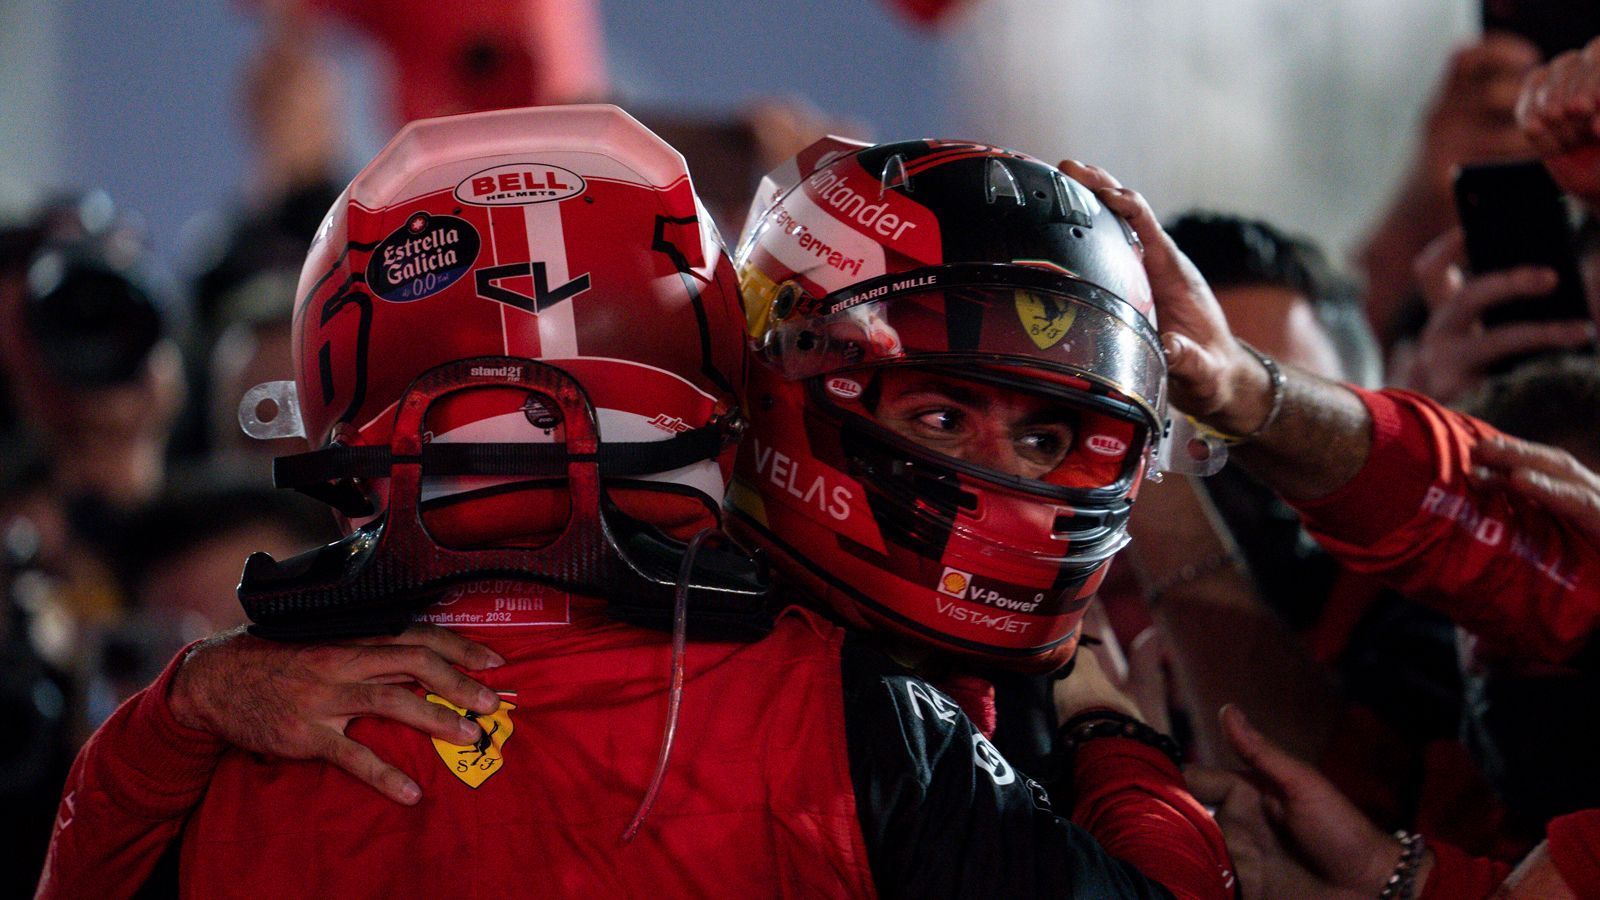 
                <strong>Gewinner: Ferrari</strong><br>
                Die Formel 1 erstrahlt beim Auftakt in Rot: Das stolze Ferrari ist endlich wieder auf Siegkurs und in dieser Form ohne Frage ein WM-Kandidat. Charles Leclerc hat im Duell mit Max Verstappen Klasse bewiesen und gezeigt, dass auch er WM-Format besitzt. "Das Team hat es verdient, endlich haben wir es geschafft", sagte Teamchef Mattia Binotto. Und Leclerc erinnerte an zwei "unglaublich schwierige" Jahre. "Wir wussten, dass das eine große Möglichkeit für das Team ist", sagte er mit Verweis auf das neue Reglement. Ferrari hat seine Hausaufgaben gemacht.
              